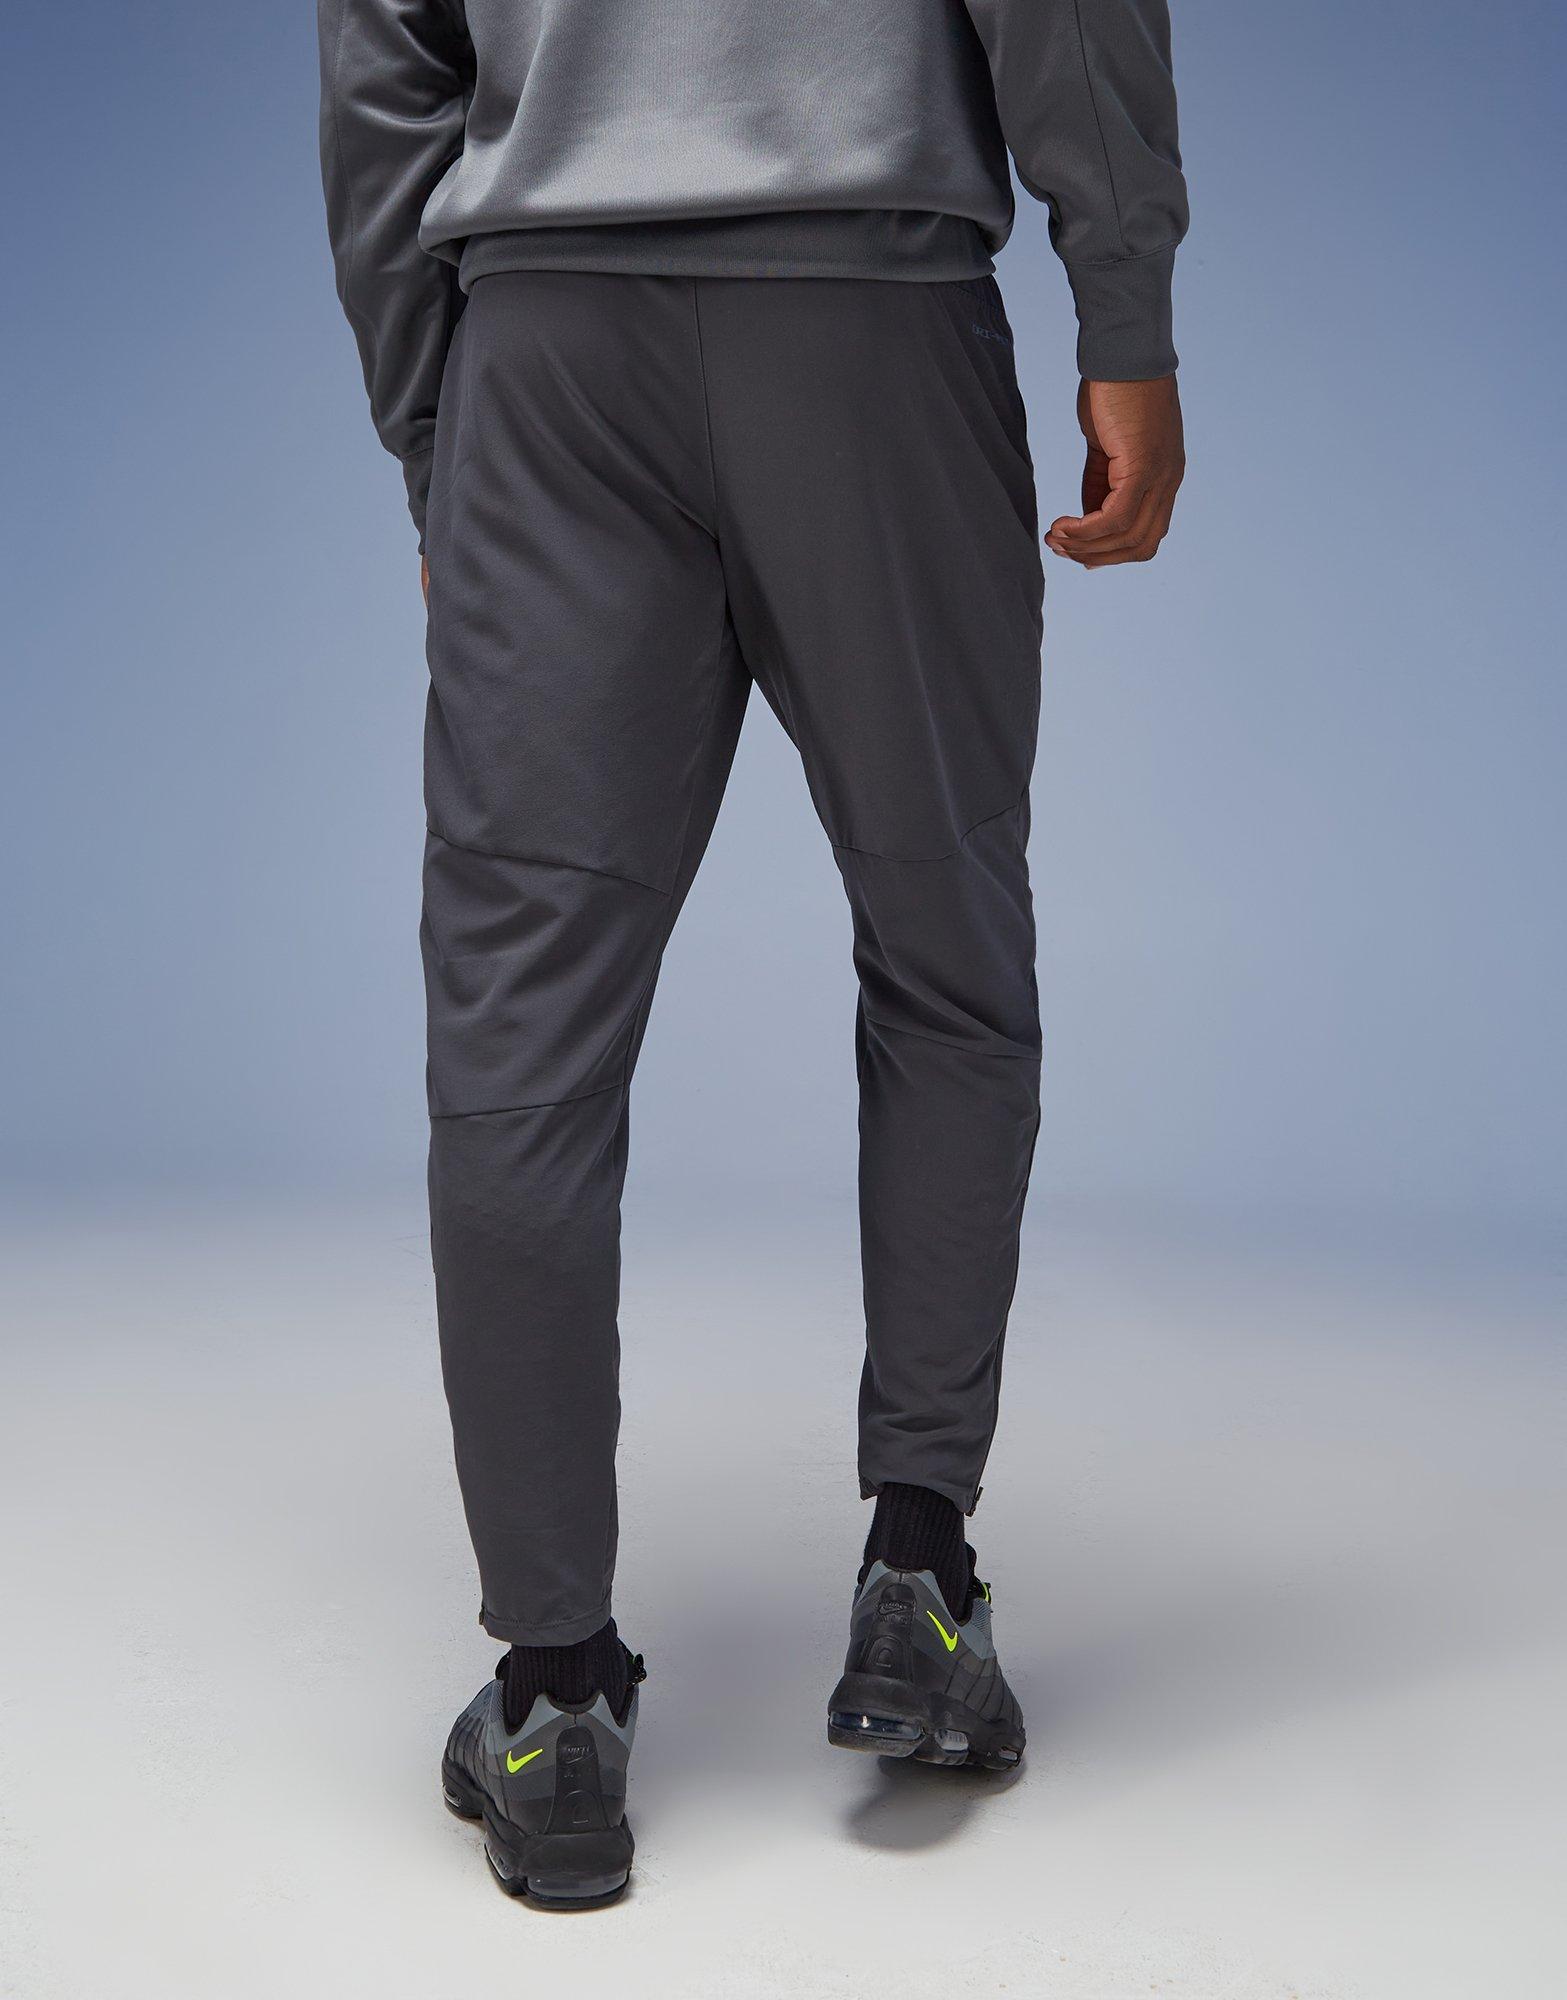 Grey Nike Air Max Track Pants - JD Sports Global